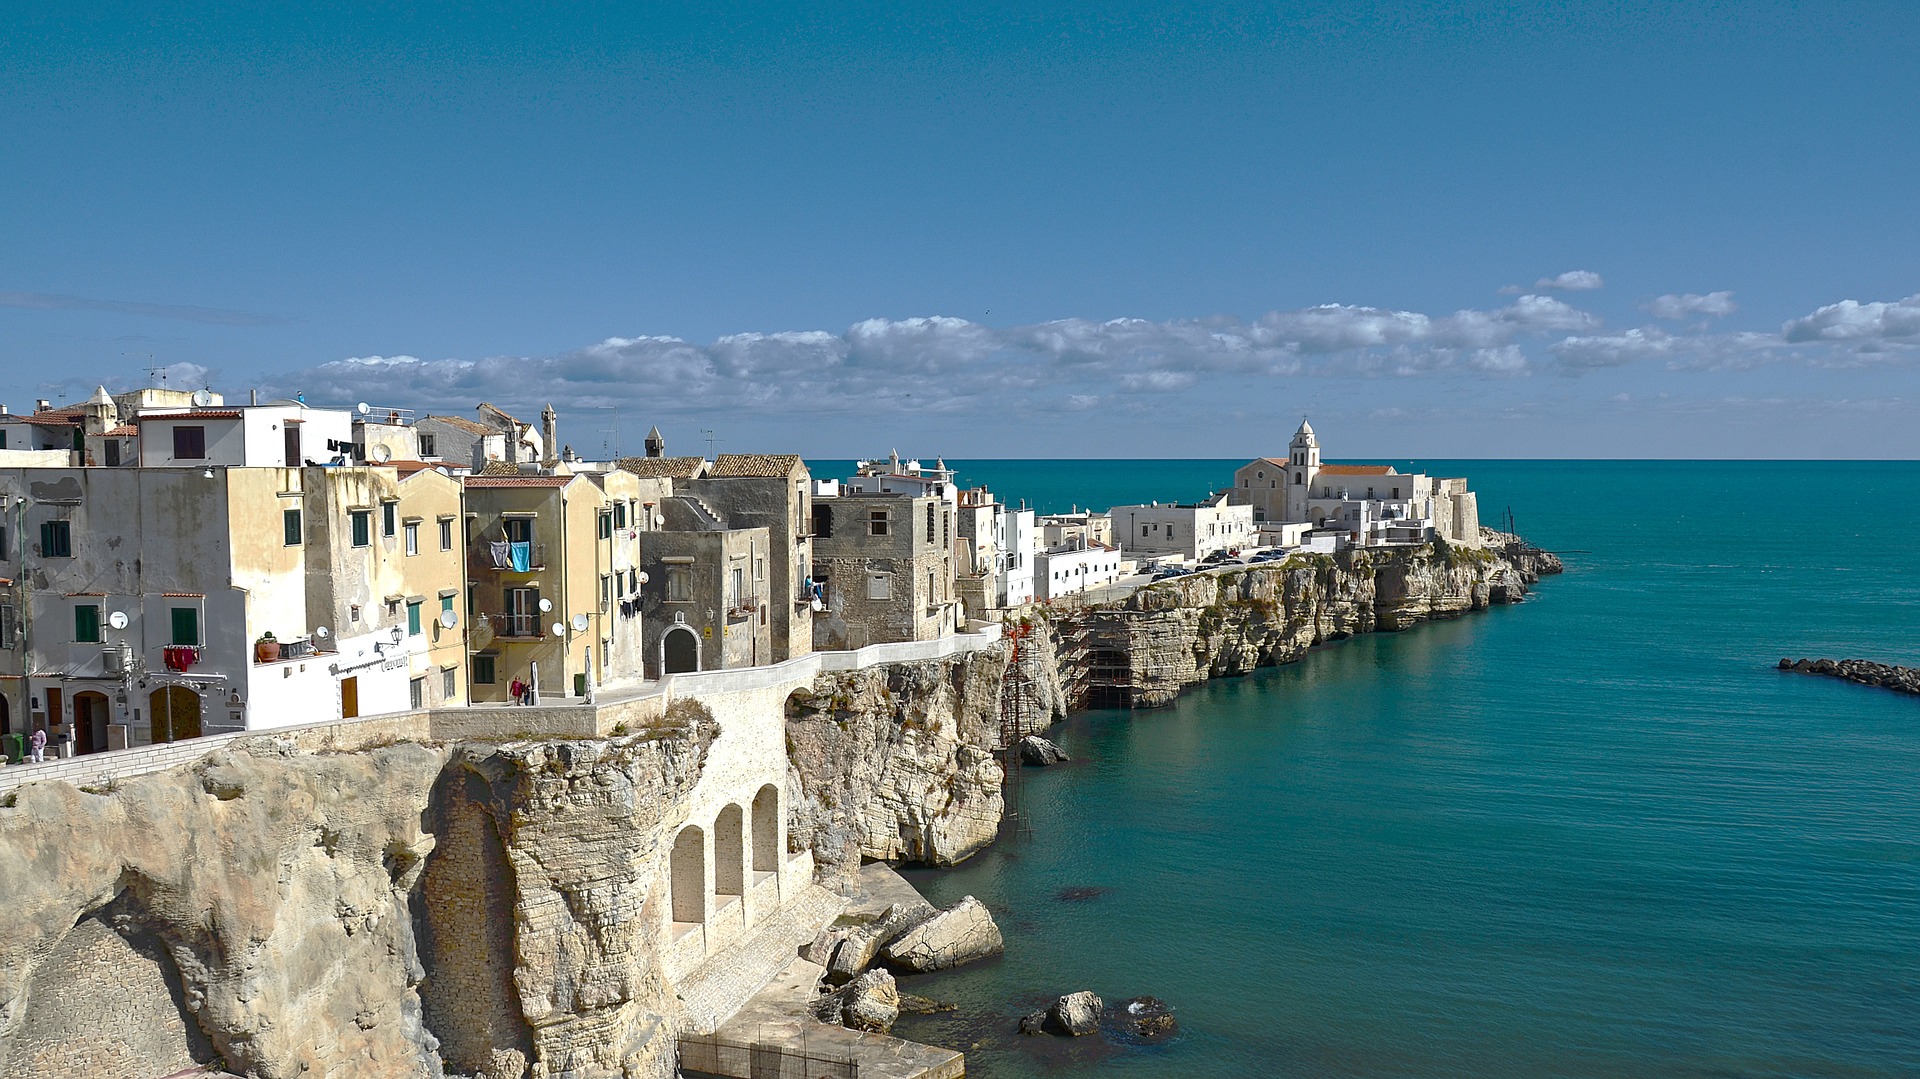 Direktflüge nach Bari so günstig da lohnt sich doch eine Städtereise an die Adria